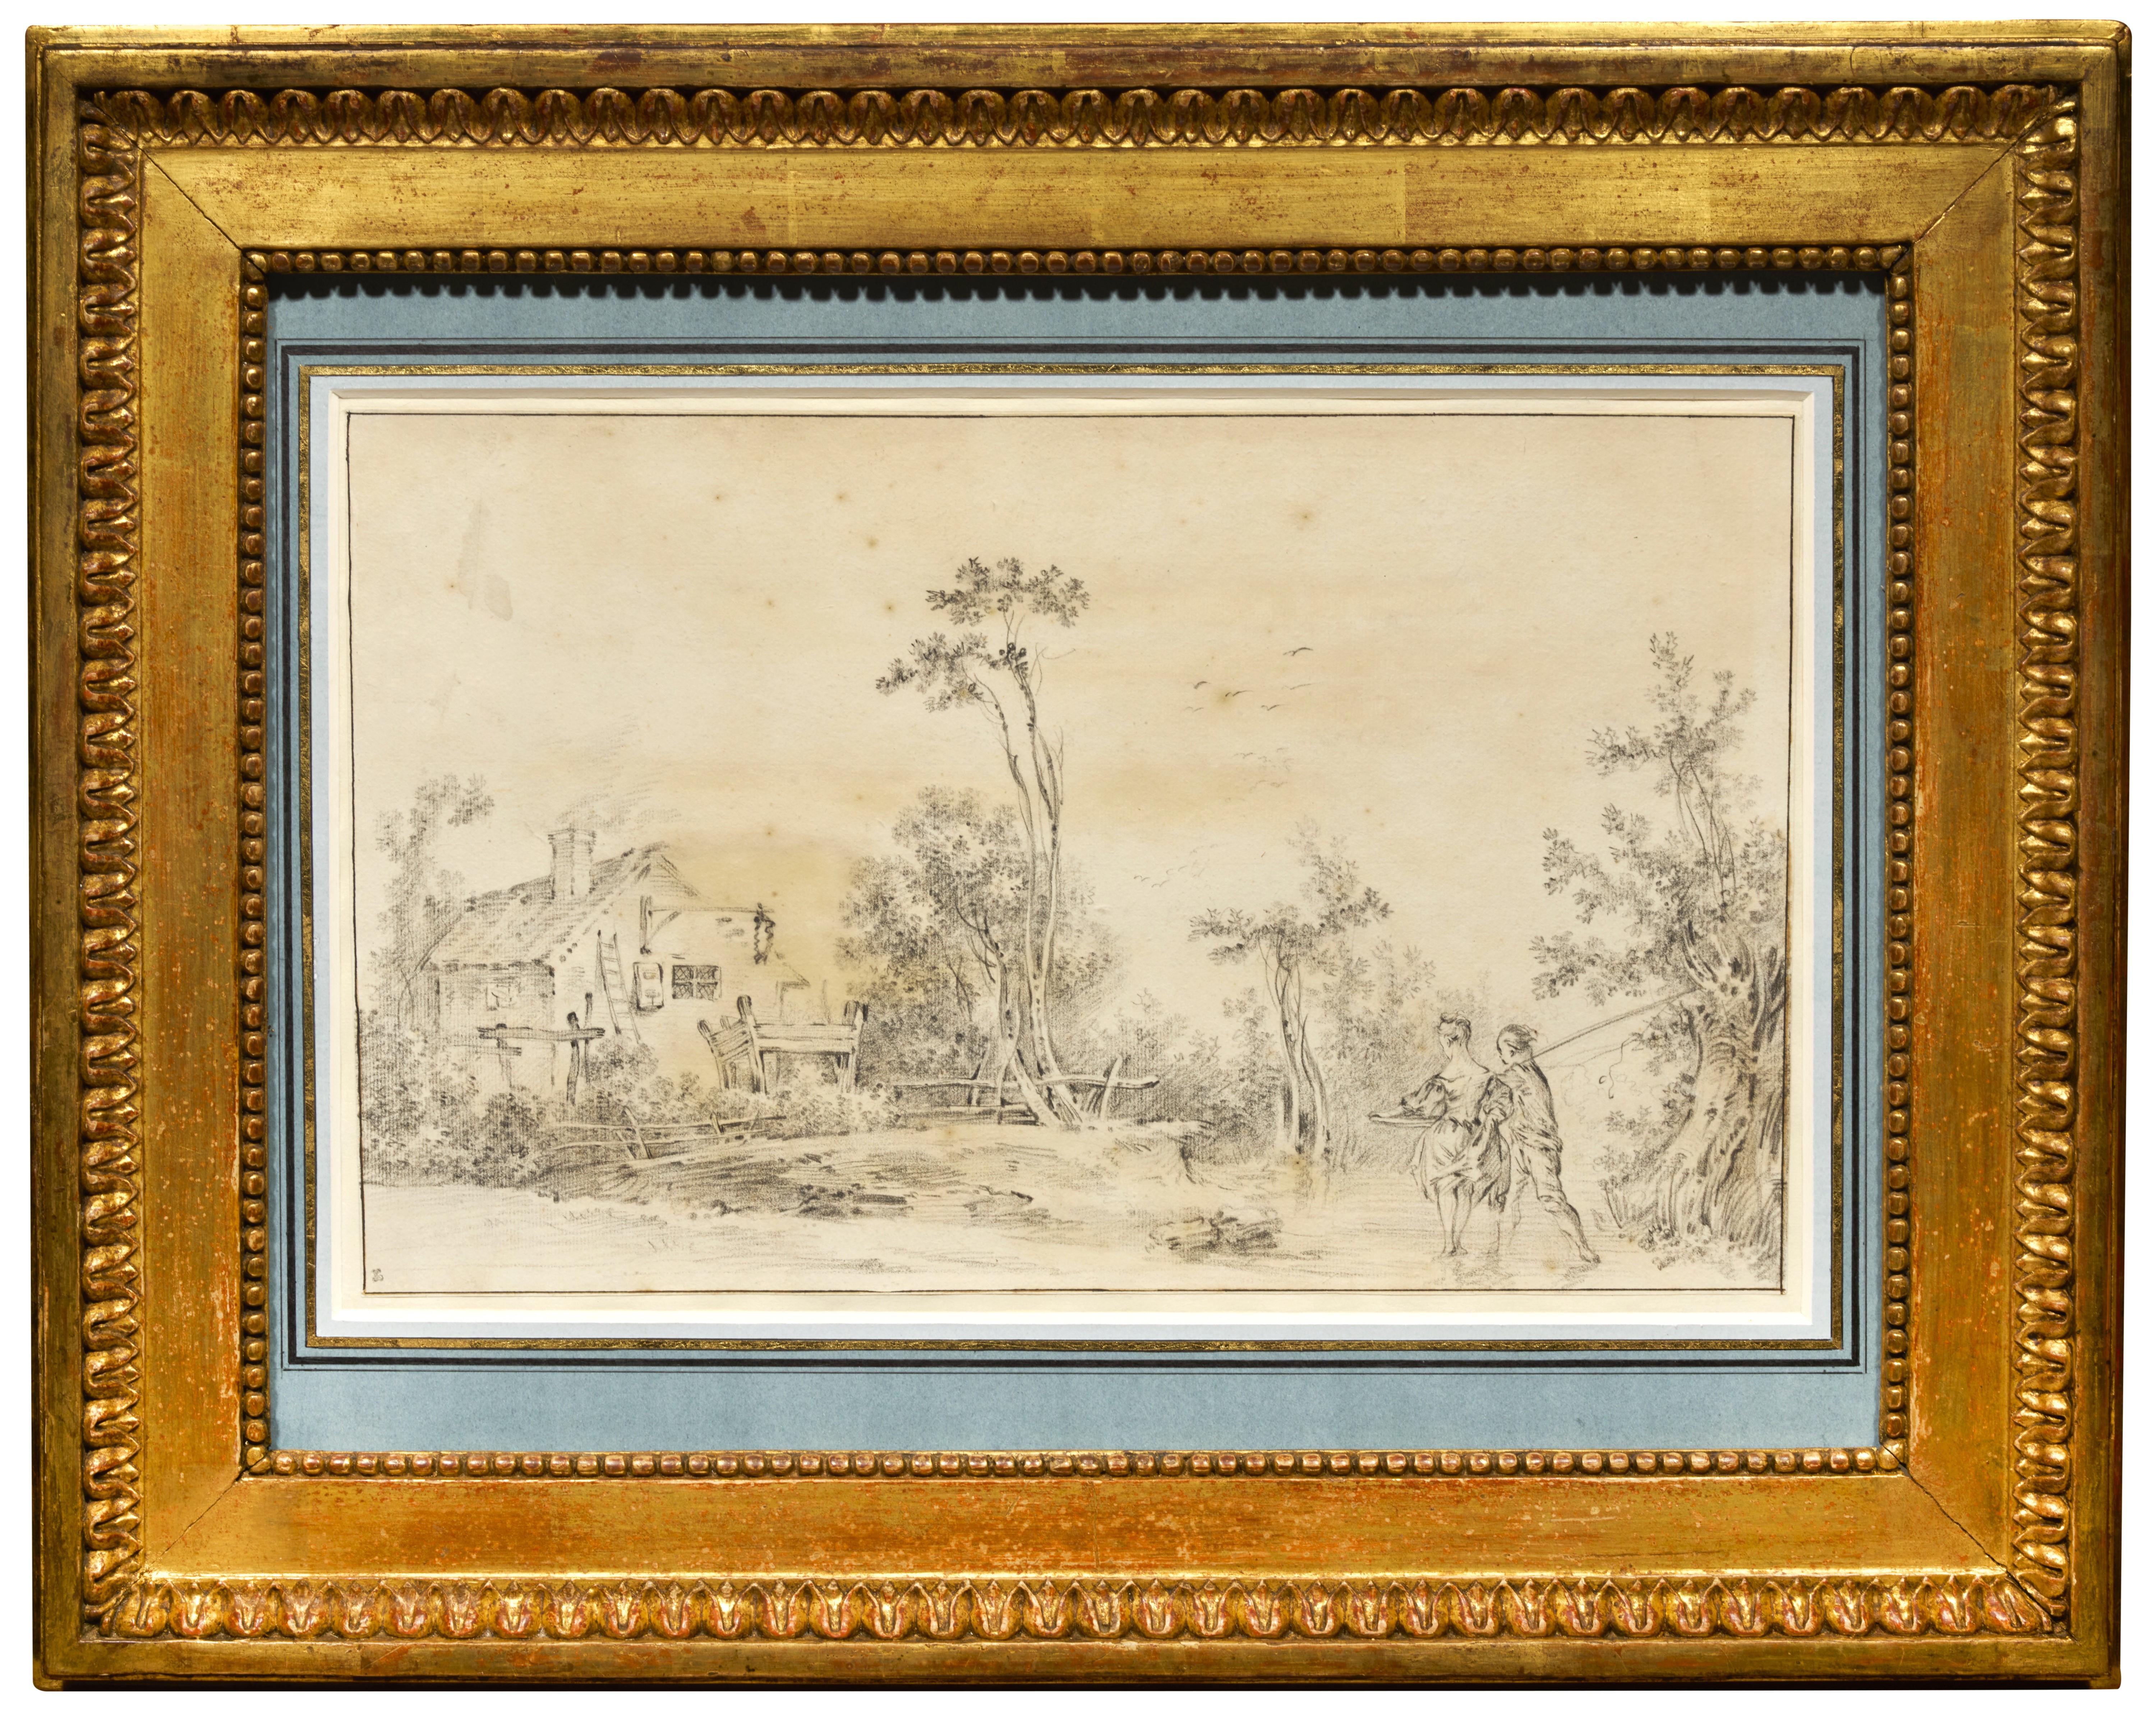 Eine ländliche Landschaft, eine Zeichnung, die zum Teil Francois Boucher zugeschrieben wird – Painting von François Boucher